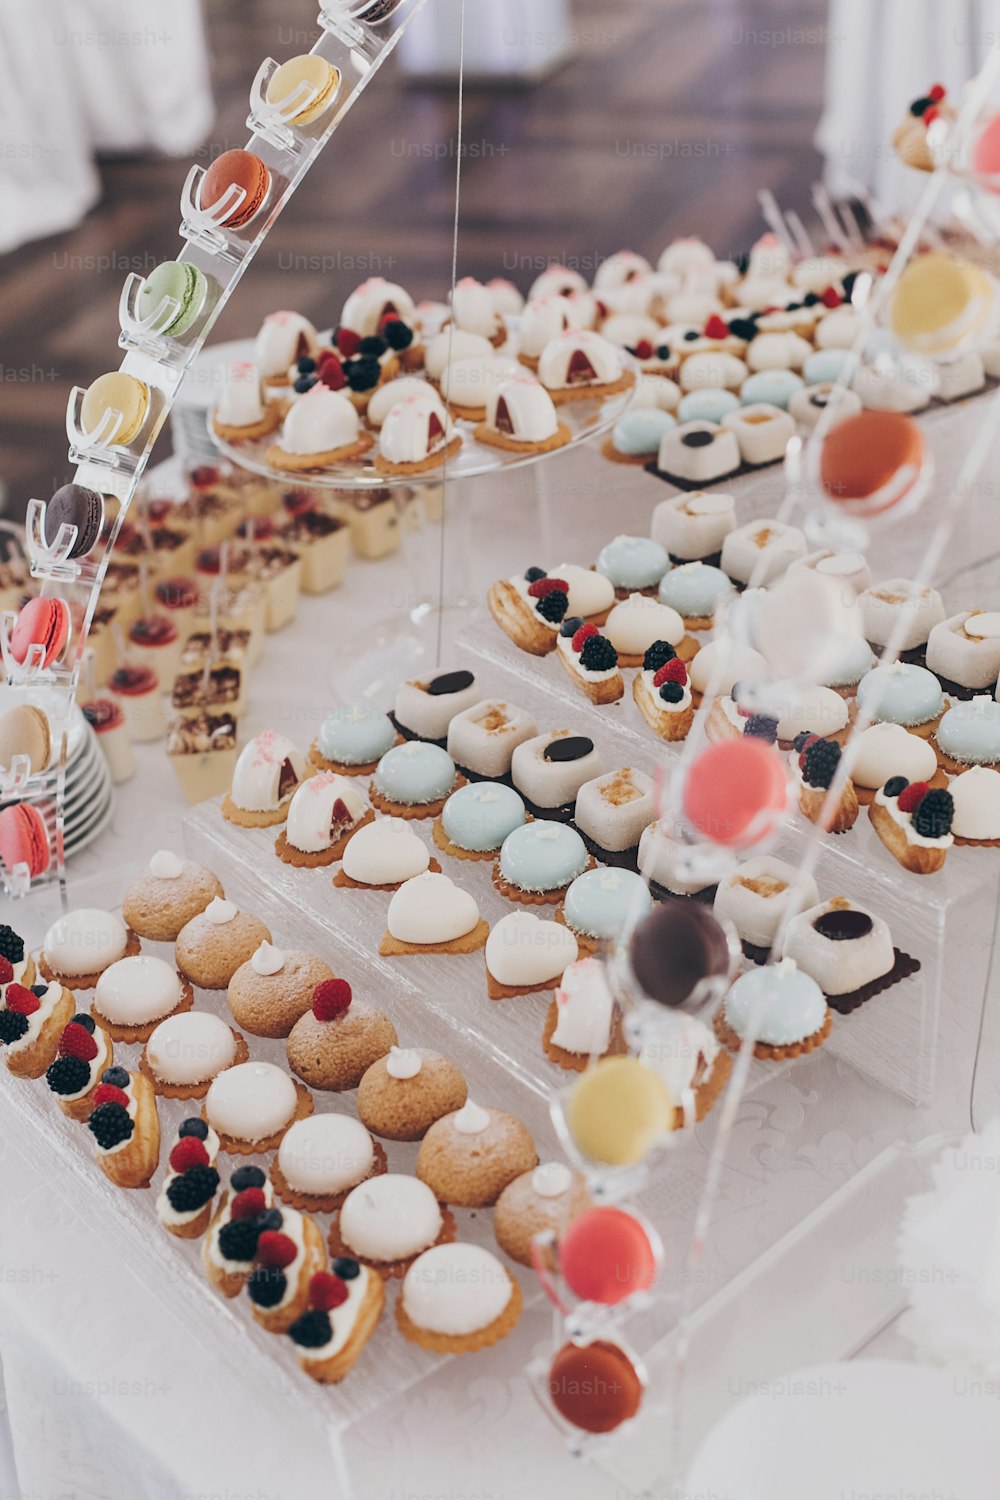 Köstliche cremige Desserts mit Früchten, Macarons, Kuchen und Keksen auf dem Tisch bei der Hochzeitsfeier im Restaurant. Luxus-Catering-Service. Hochzeit Schokoriegel.